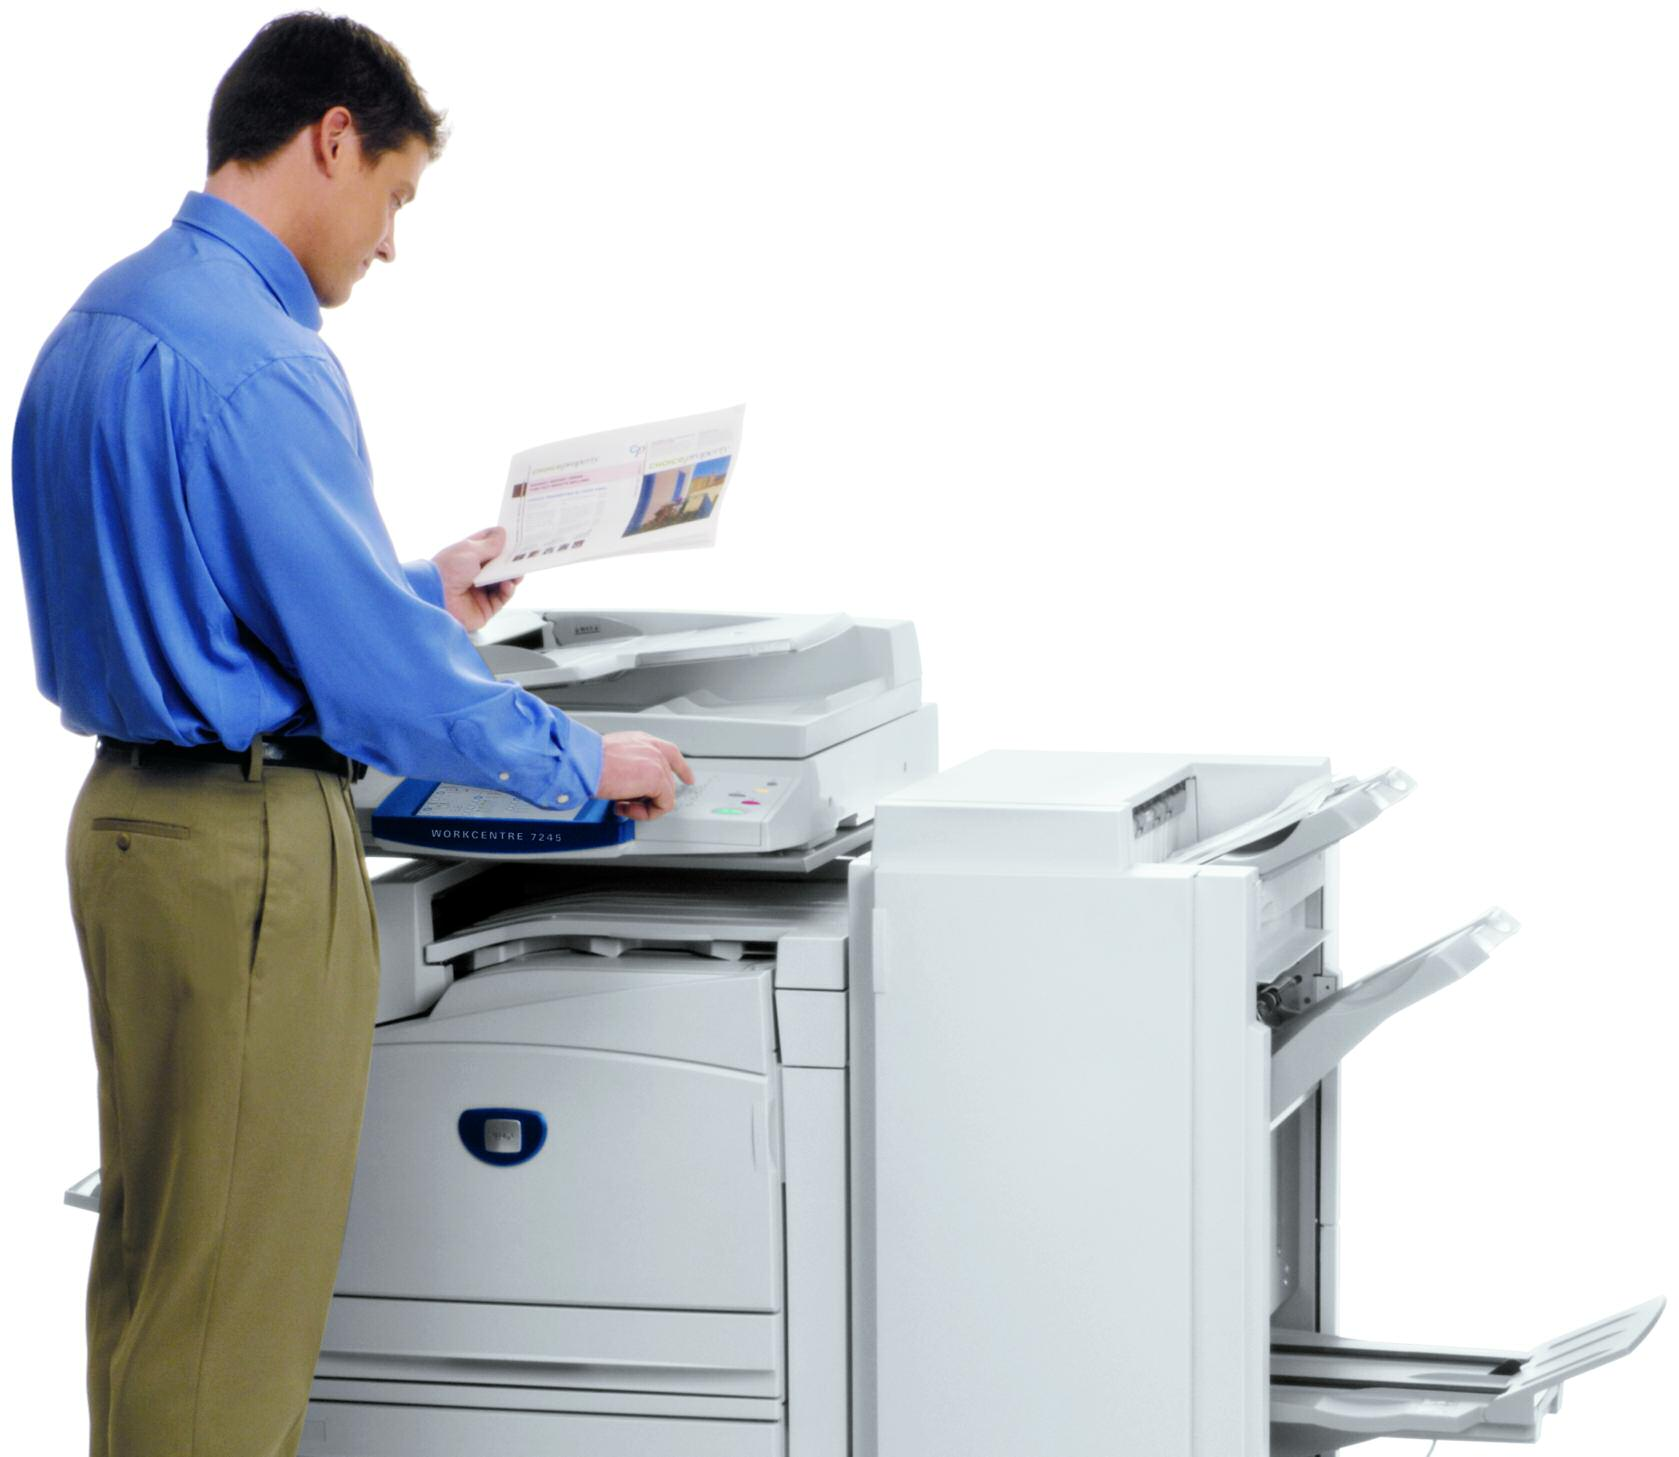 WorkCentre 7228 / 7235 / 7245 Un equipo multitarea realiza las eficaces funciones que su empresa utiliza diariamente: copias, impresión en red, correo electrónico, fax y escaneo.